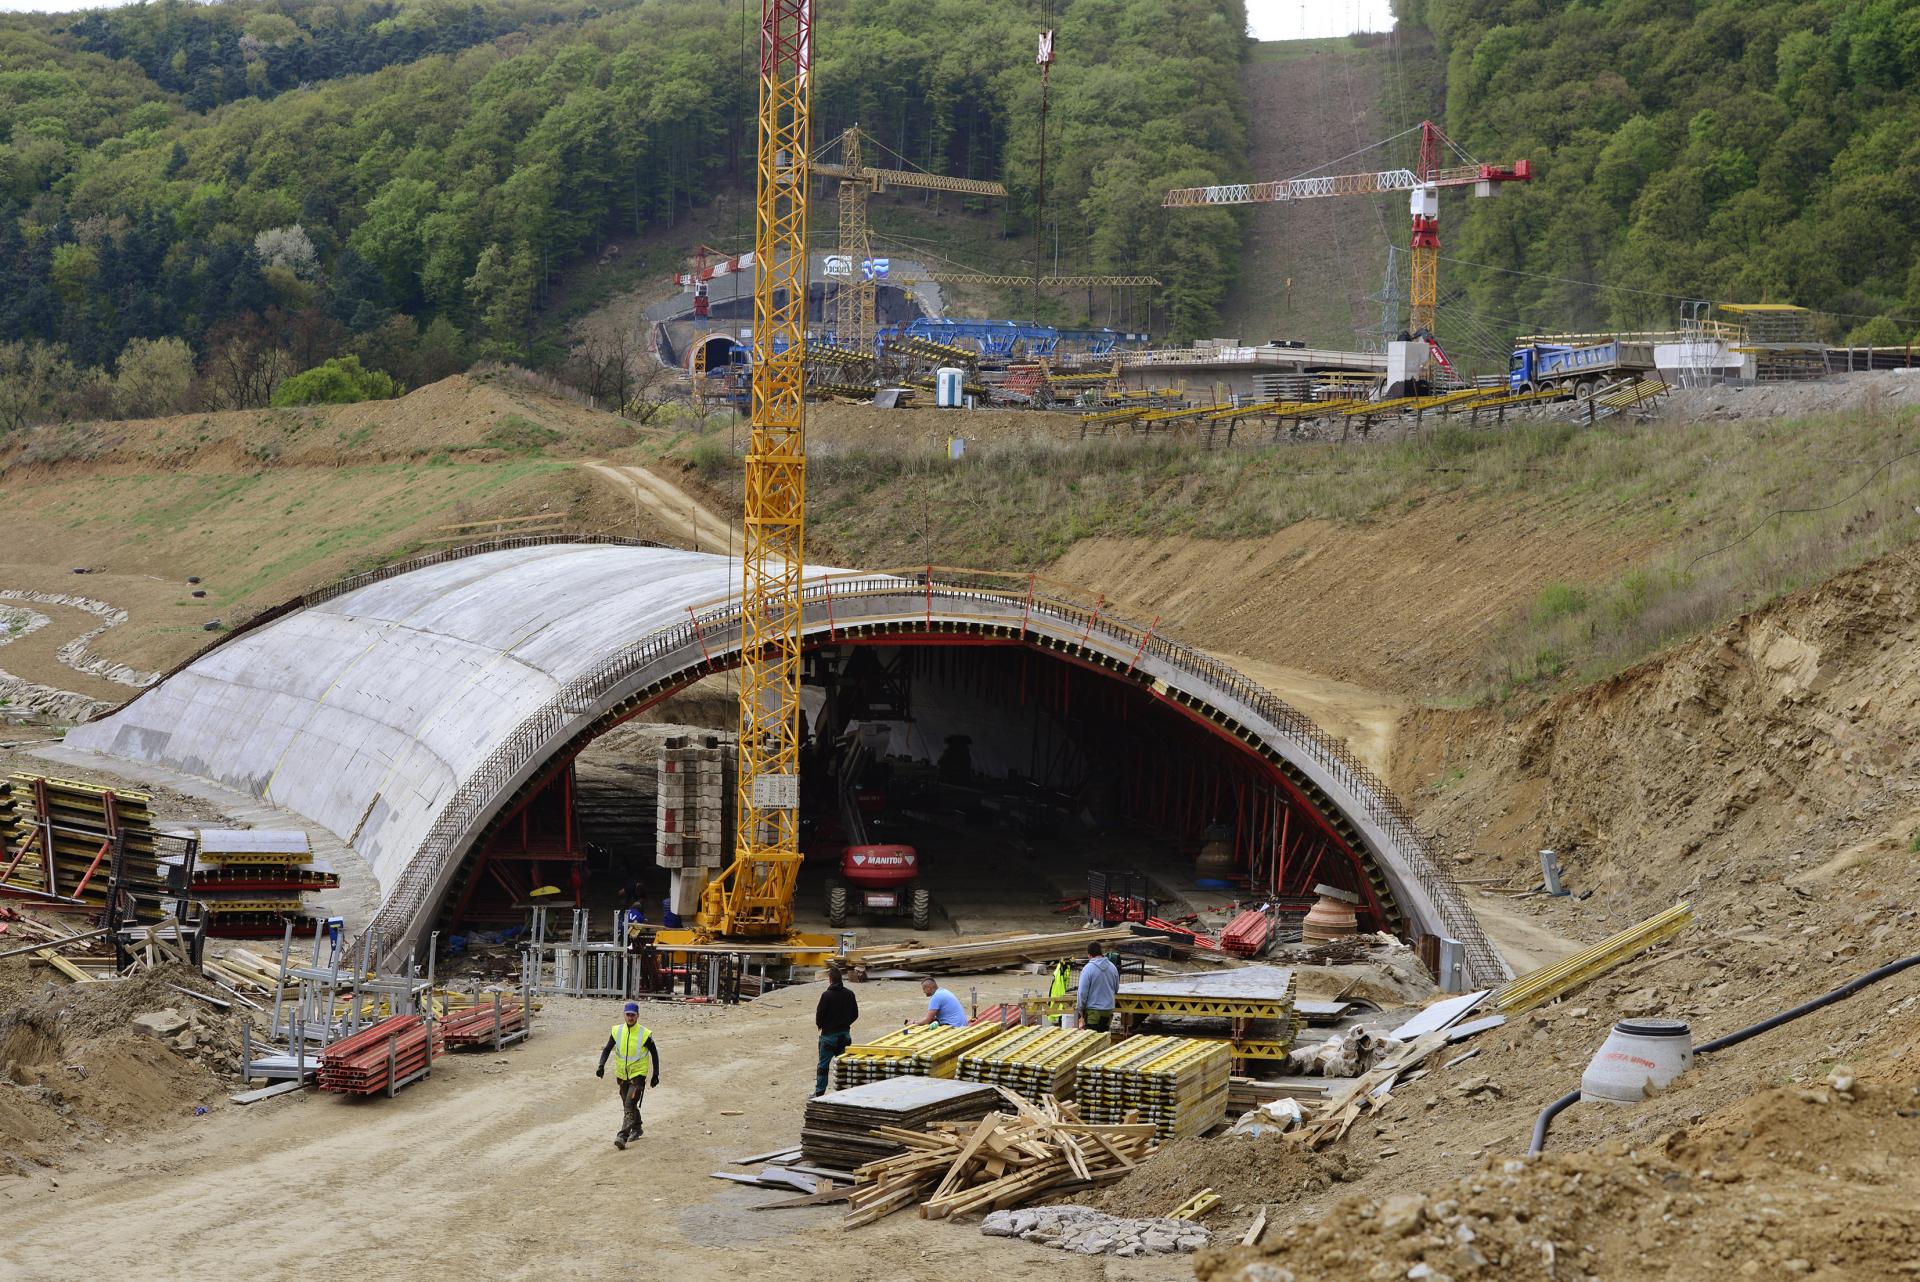 Tunel Bikoš už má dokončený náter ostenia, chodníky aj vozovku. Pracujú na nevyhnutnej technológii